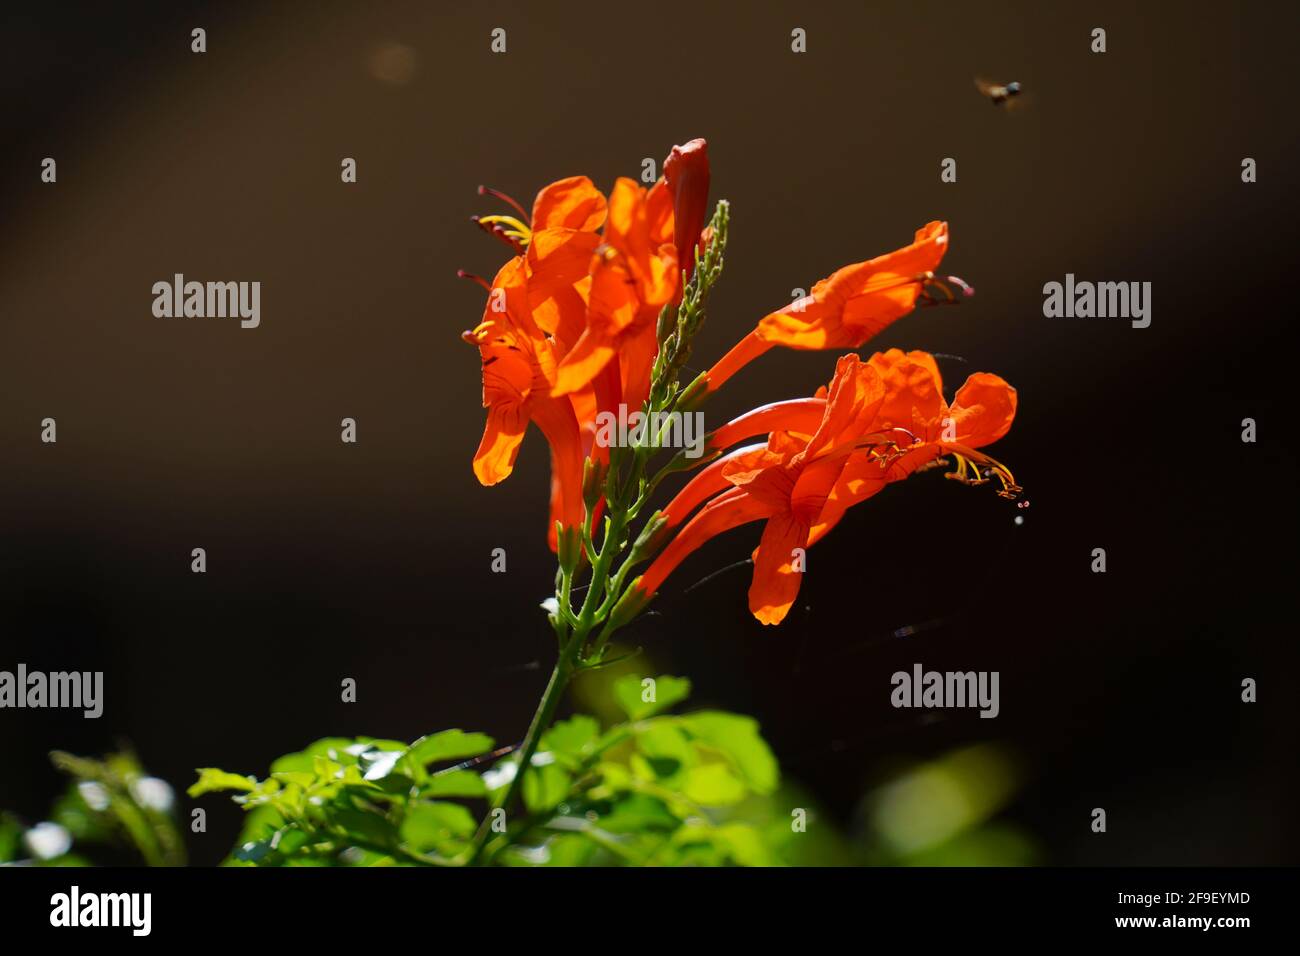 La pirosteggia venusta, conosciuta anche come fenicotteri o trombettine arancioni, è una specie vegetale del genere Pirosteggia della famiglia Bignoniaceae orig Foto Stock